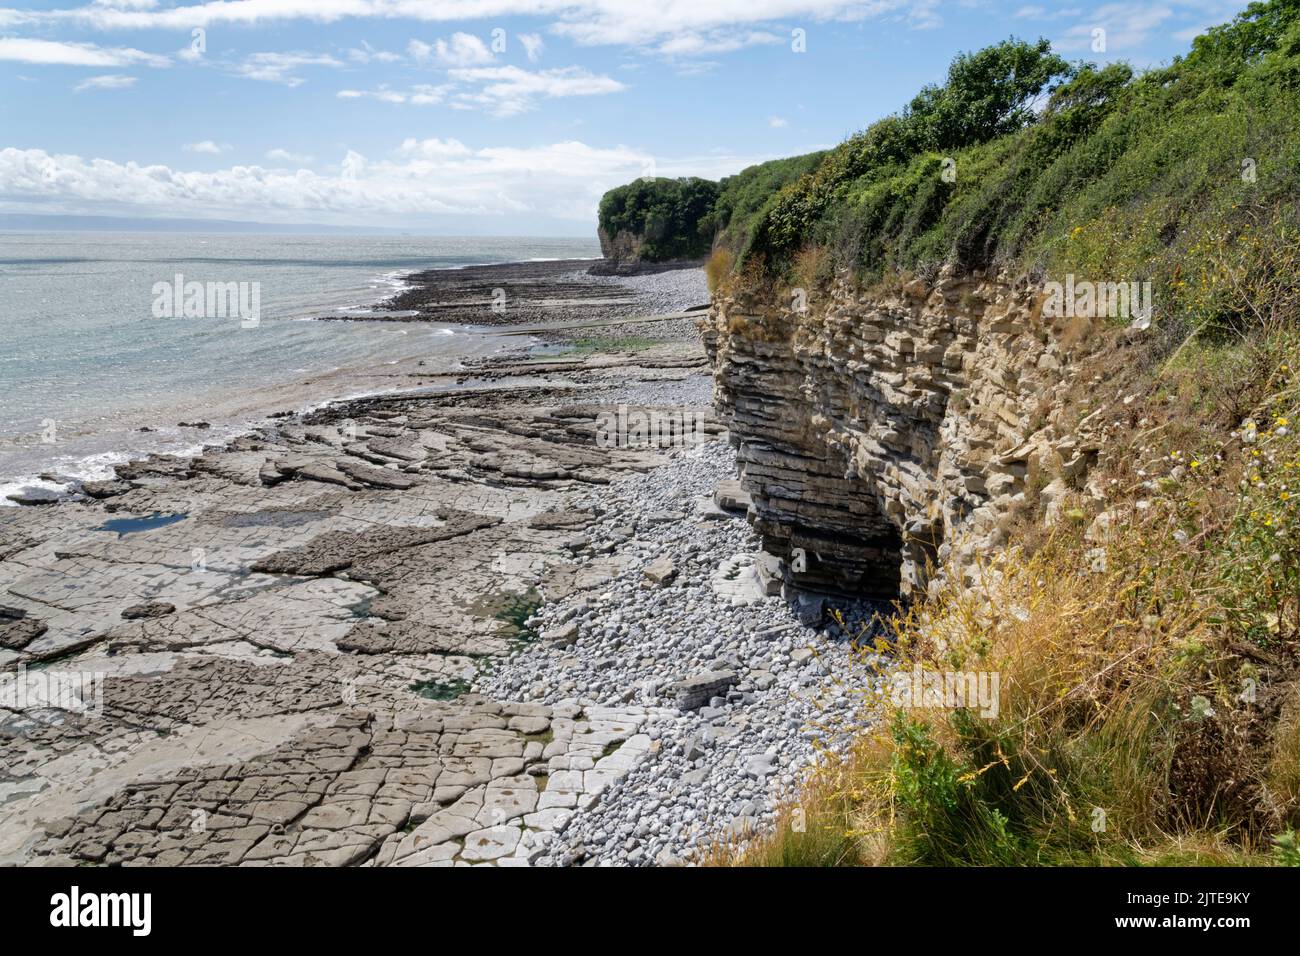 Pavimento de piedra caliza y acantilados de mar con capas de rocas, Glamorgan Heritage Coast, cerca de St. Donat's, Gales del Sur, Reino Unido, Agosto. Foto de stock